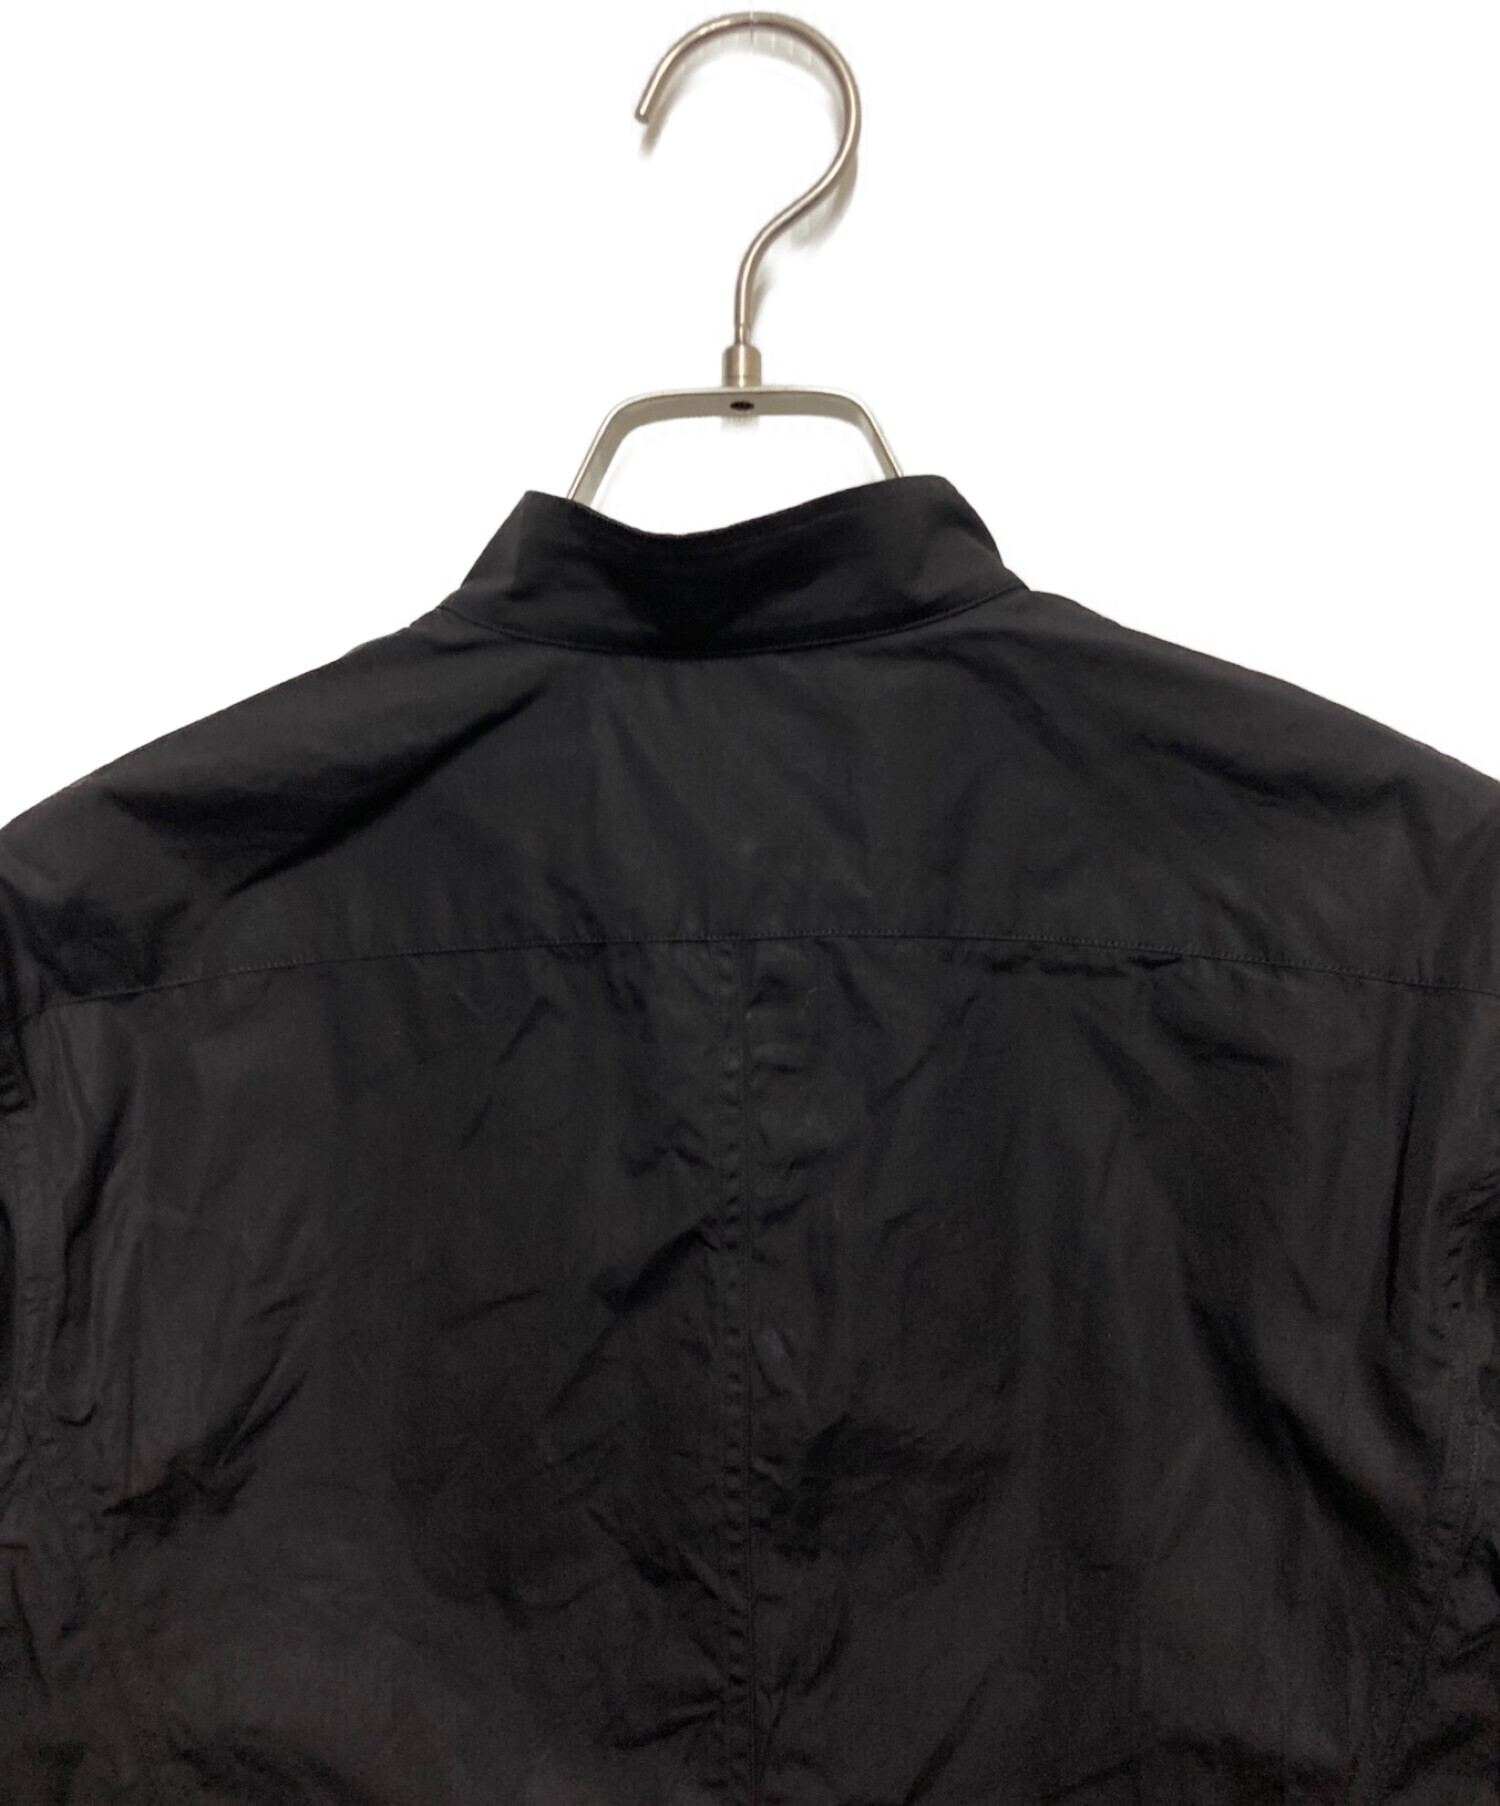 Yves Saint Laurent Rive Gauche (イヴ・サンローラン リヴ・ゴーシュ) シャツ ブラック サイズ:SIZE34